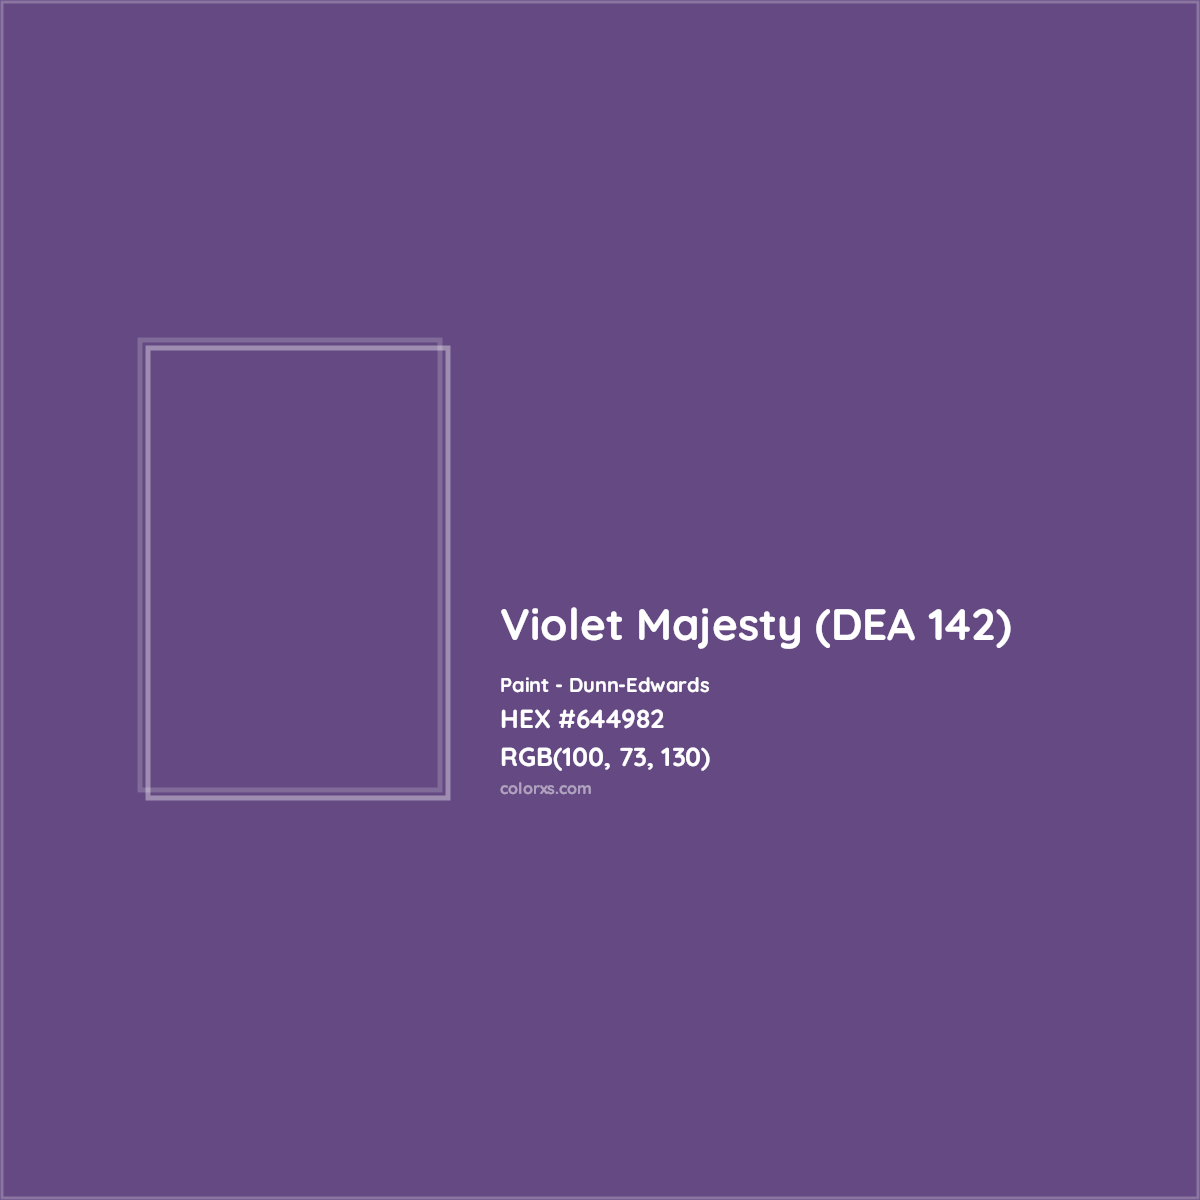 HEX #644982 Violet Majesty (DEA 142) Paint Dunn-Edwards - Color Code